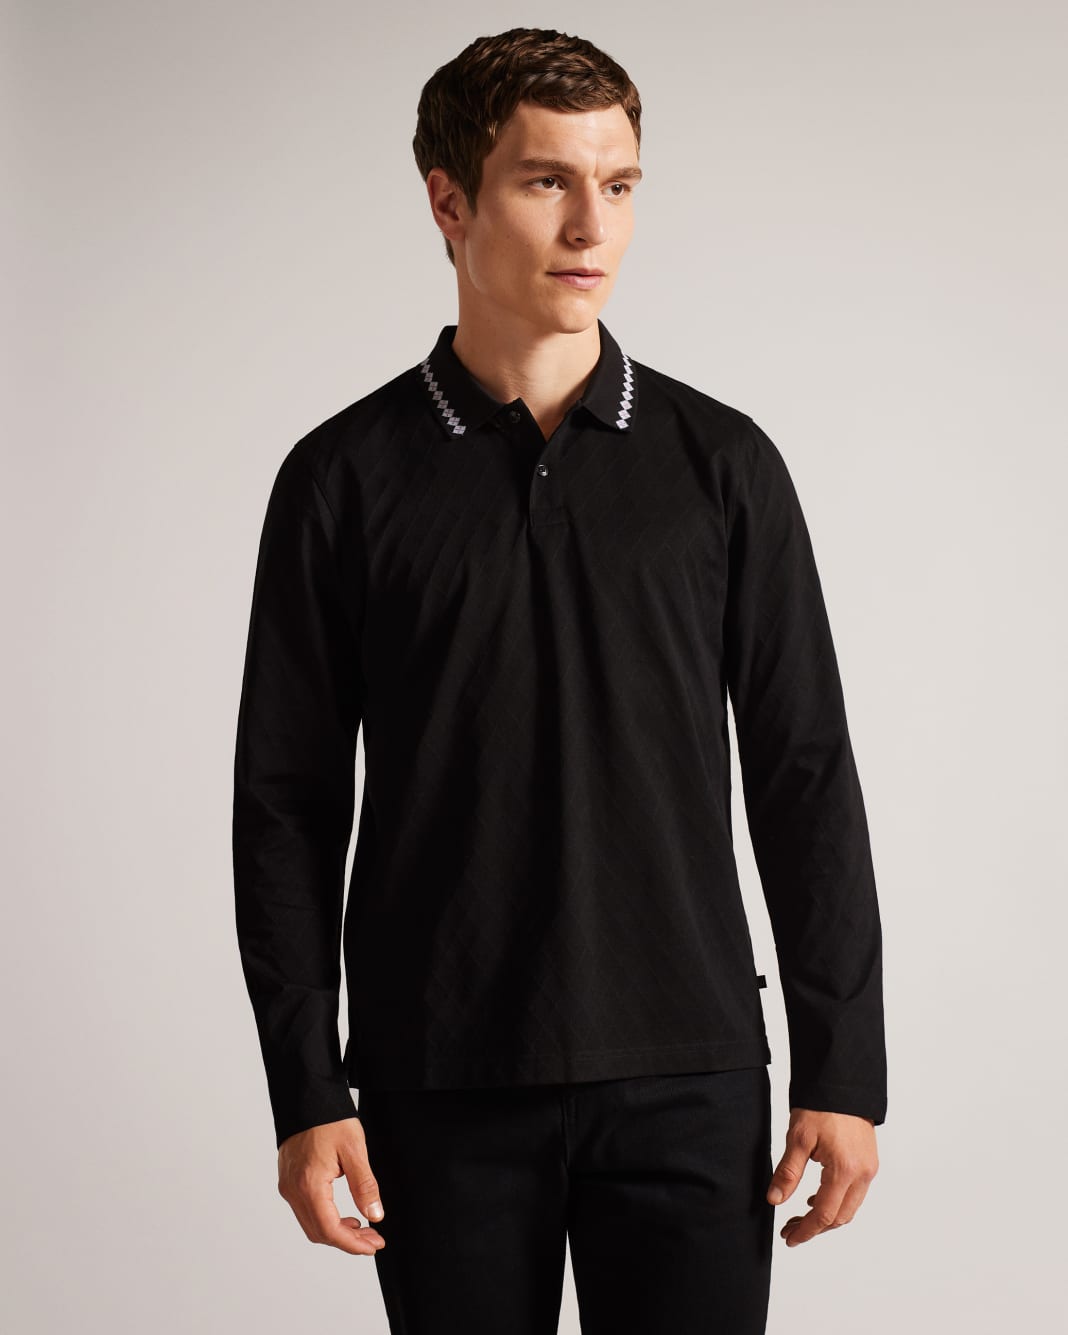 테드 베이커 폴로셔츠 Ted Baker Long Sleeve Argyle Polo Shirt,Black